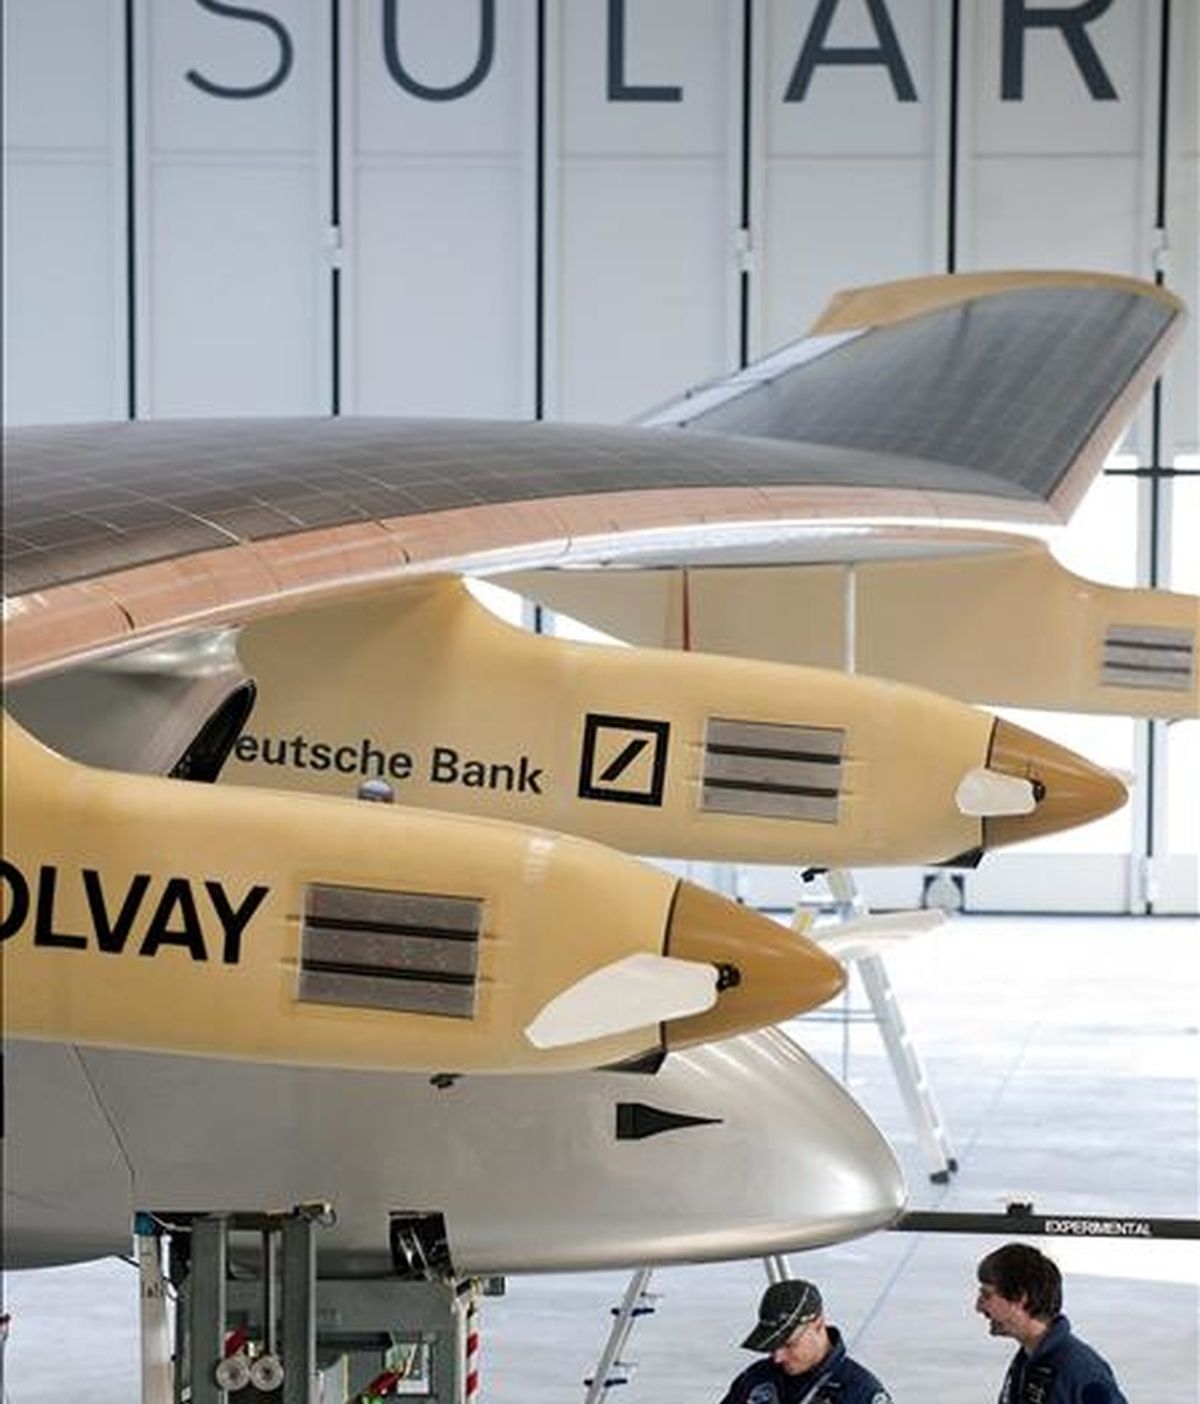 En la imagen, el avión "Solar Impulse", propulsado exclusivamene por energía solar, es fotografiado en el hangar de la base aérea militar de Payerne en Suiza. EFE/Archivo